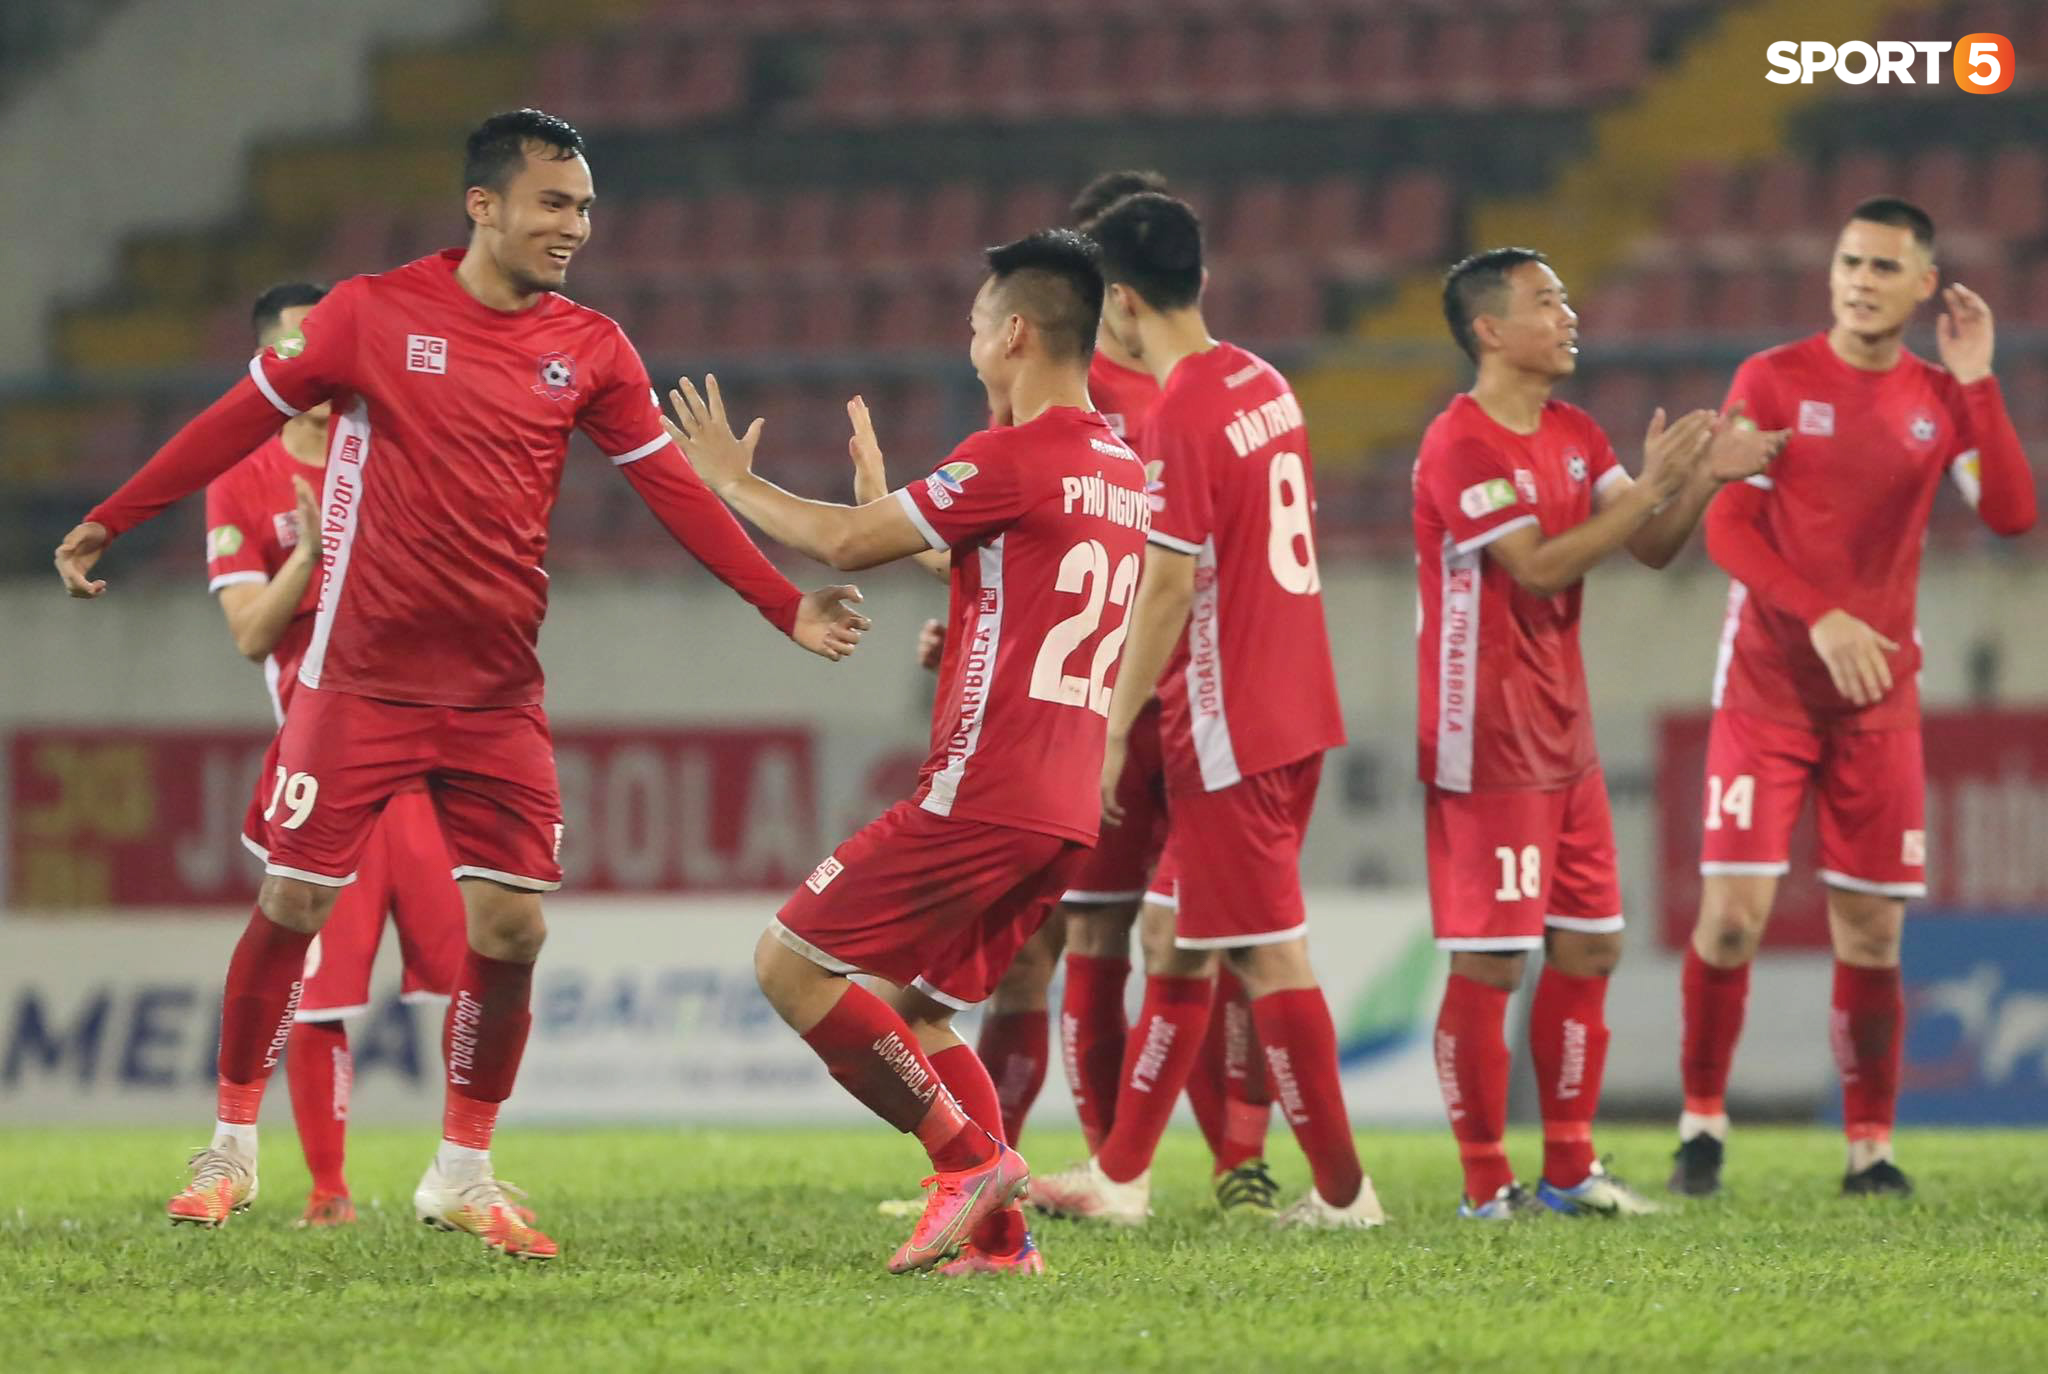 Văn Toản cúi đầu cõng đồng đội rời sân sau trận thắng đầy cảm xúc của Hải Phòng FC trước CLB Bình Phước - Ảnh 5.